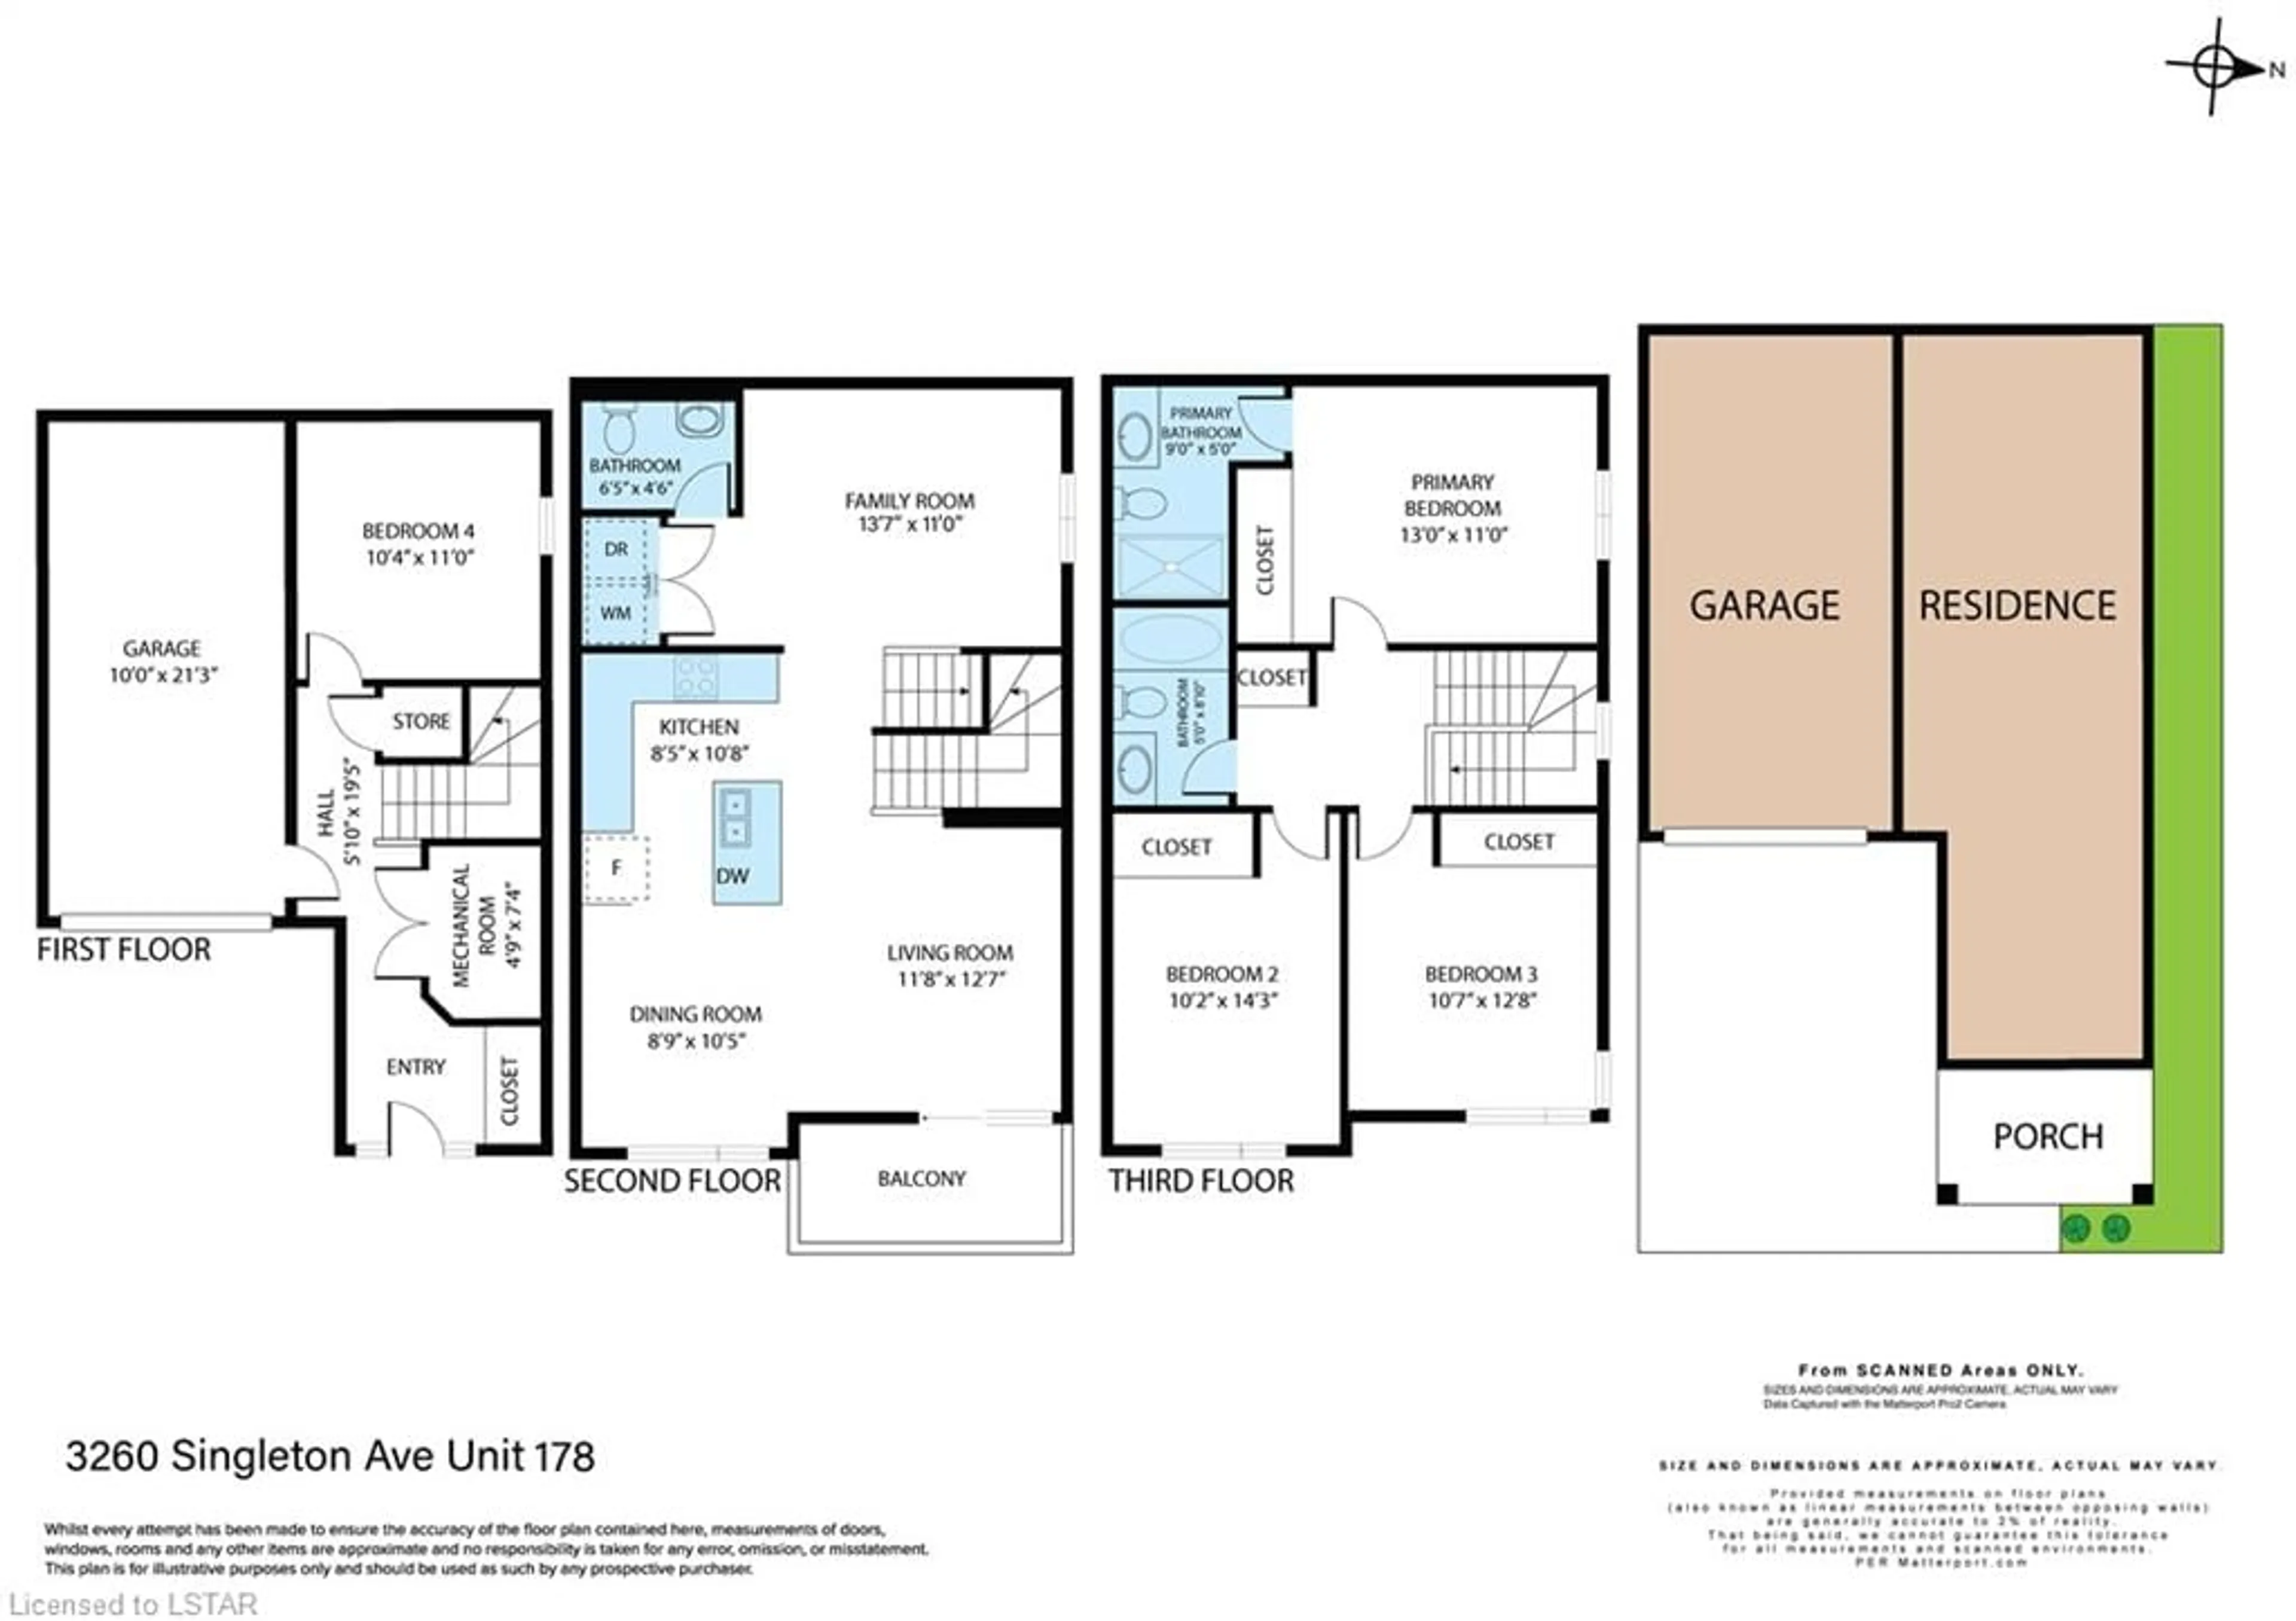 Floor plan for 3260 Singleton Ave #178, London Ontario N6L 0E7